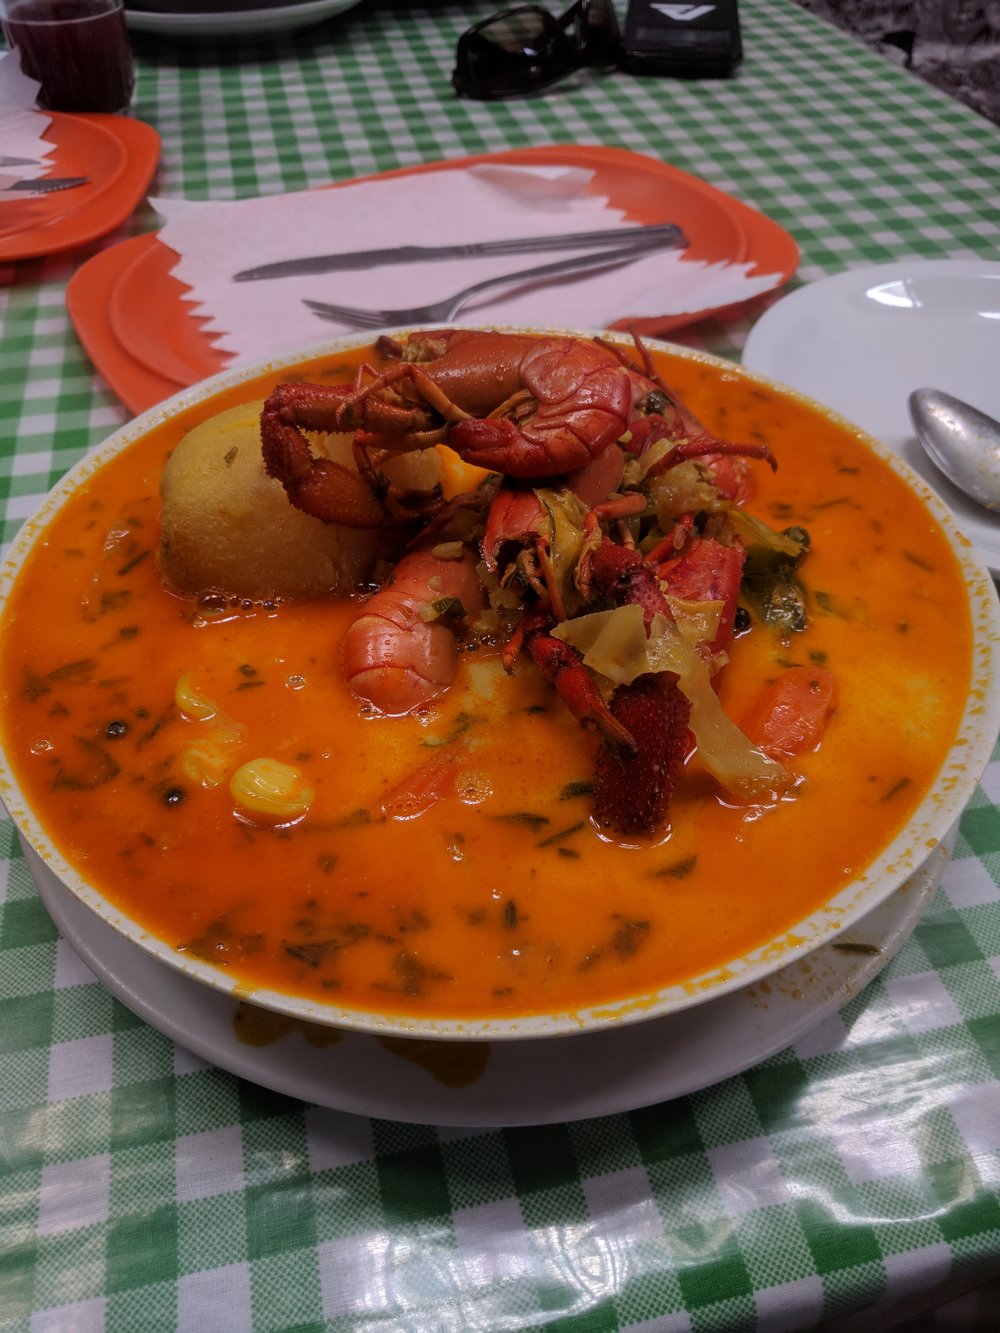 chupe de camarones- crawfish soup